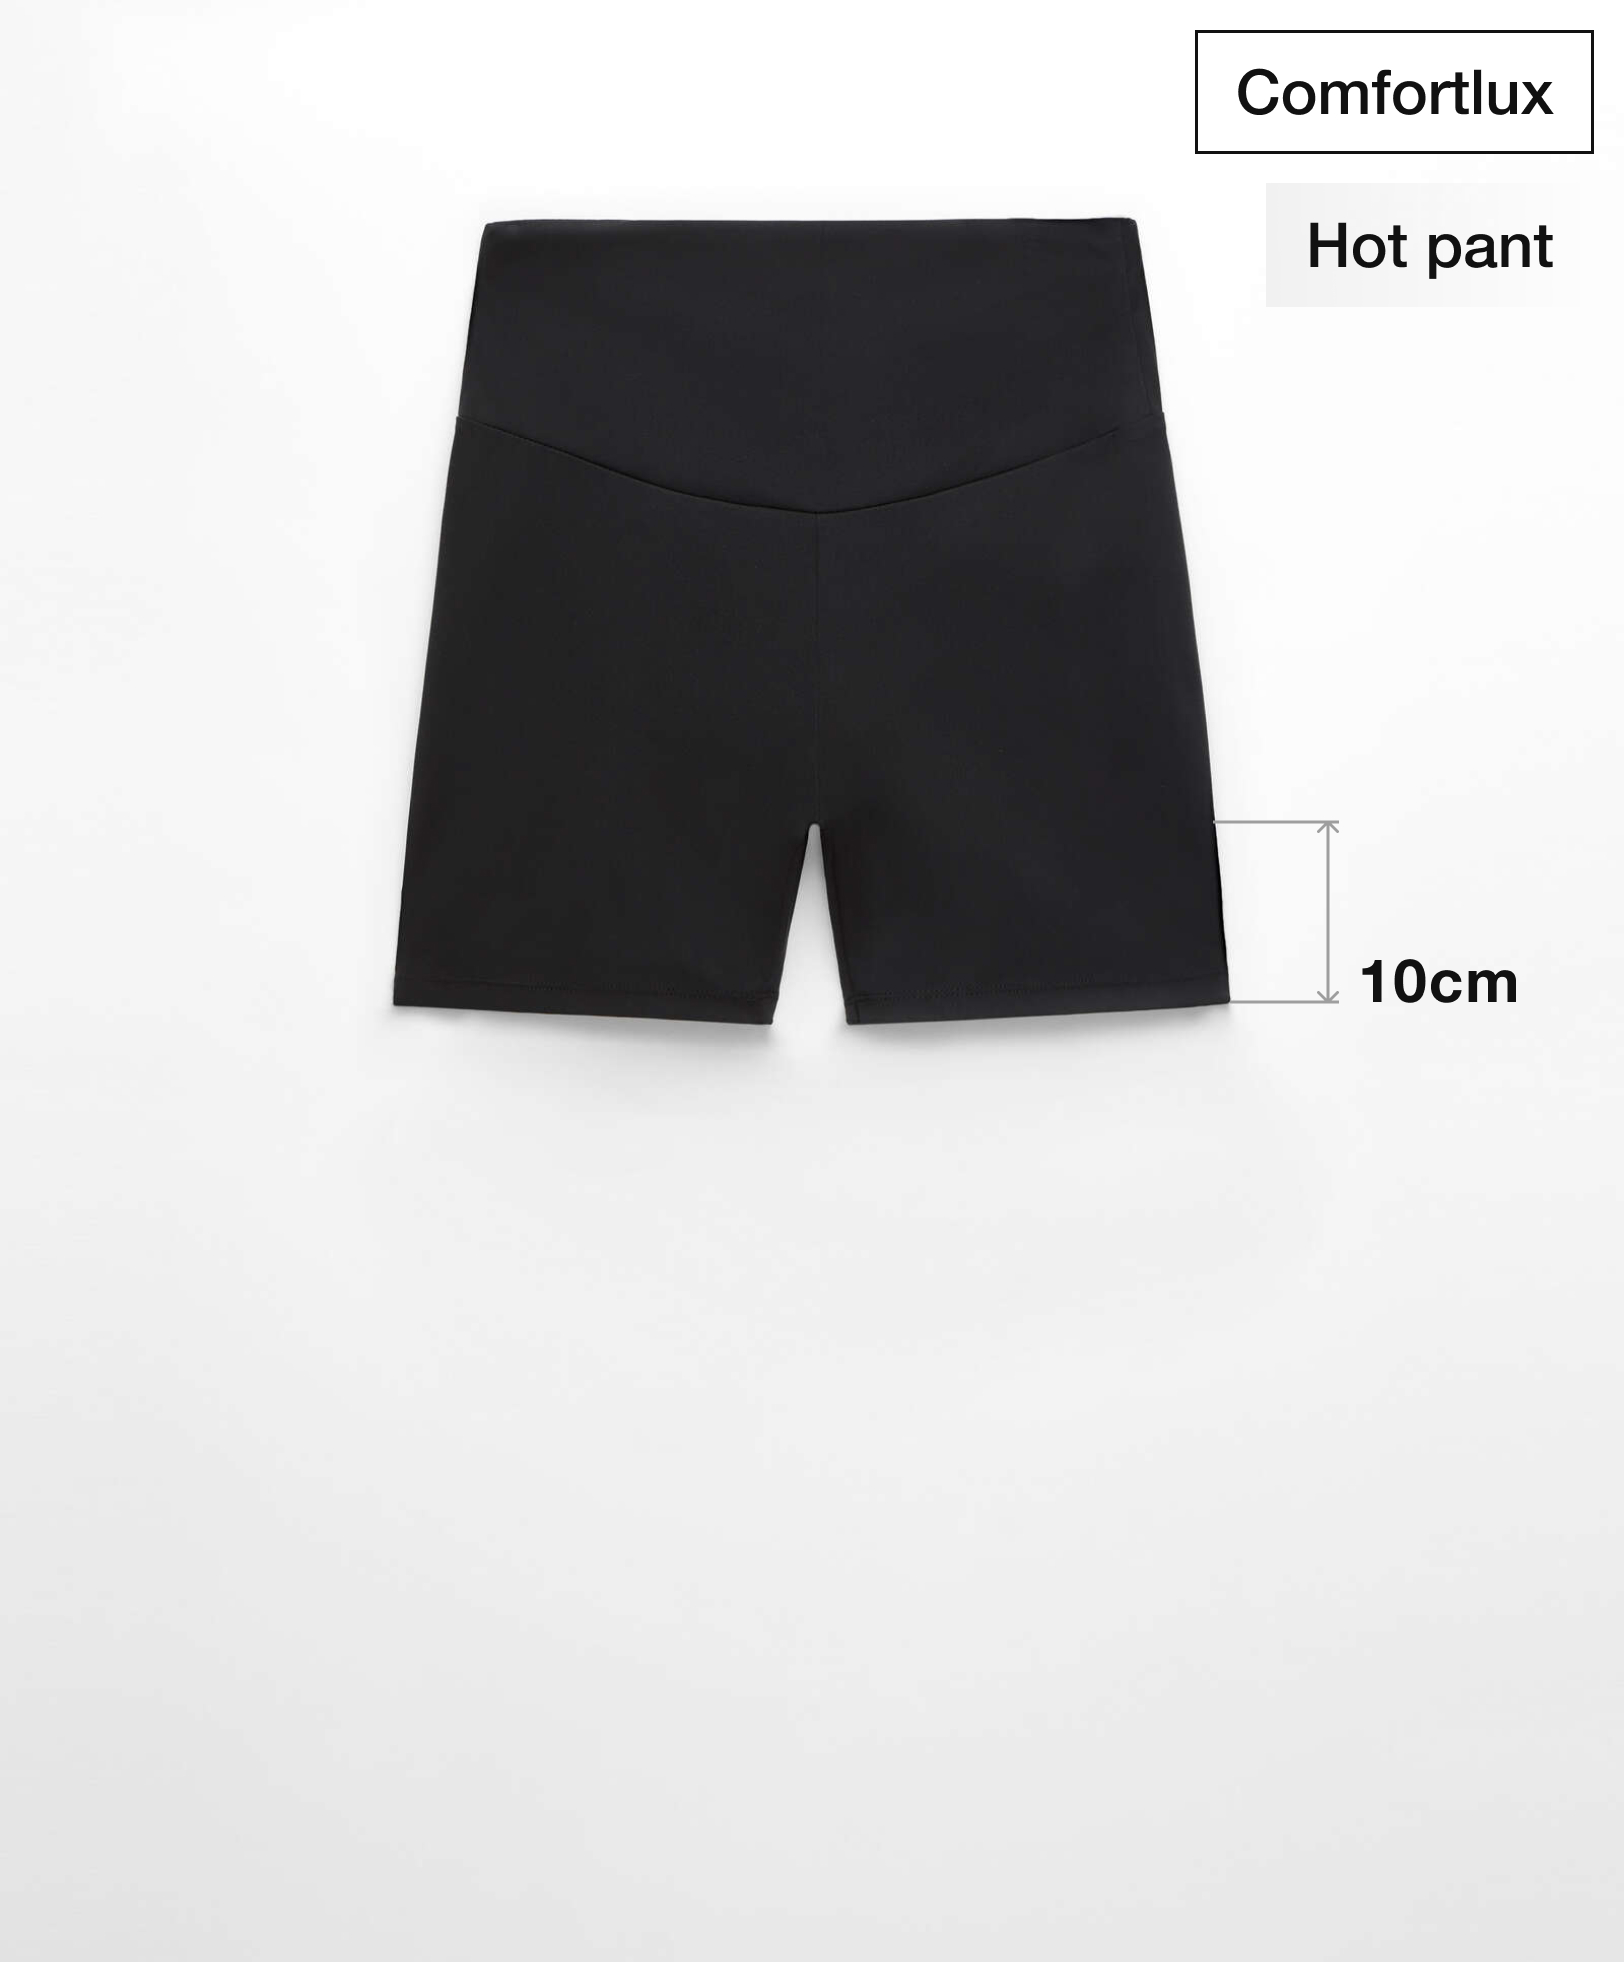 Hotpants high rise comfortlux 10 cm